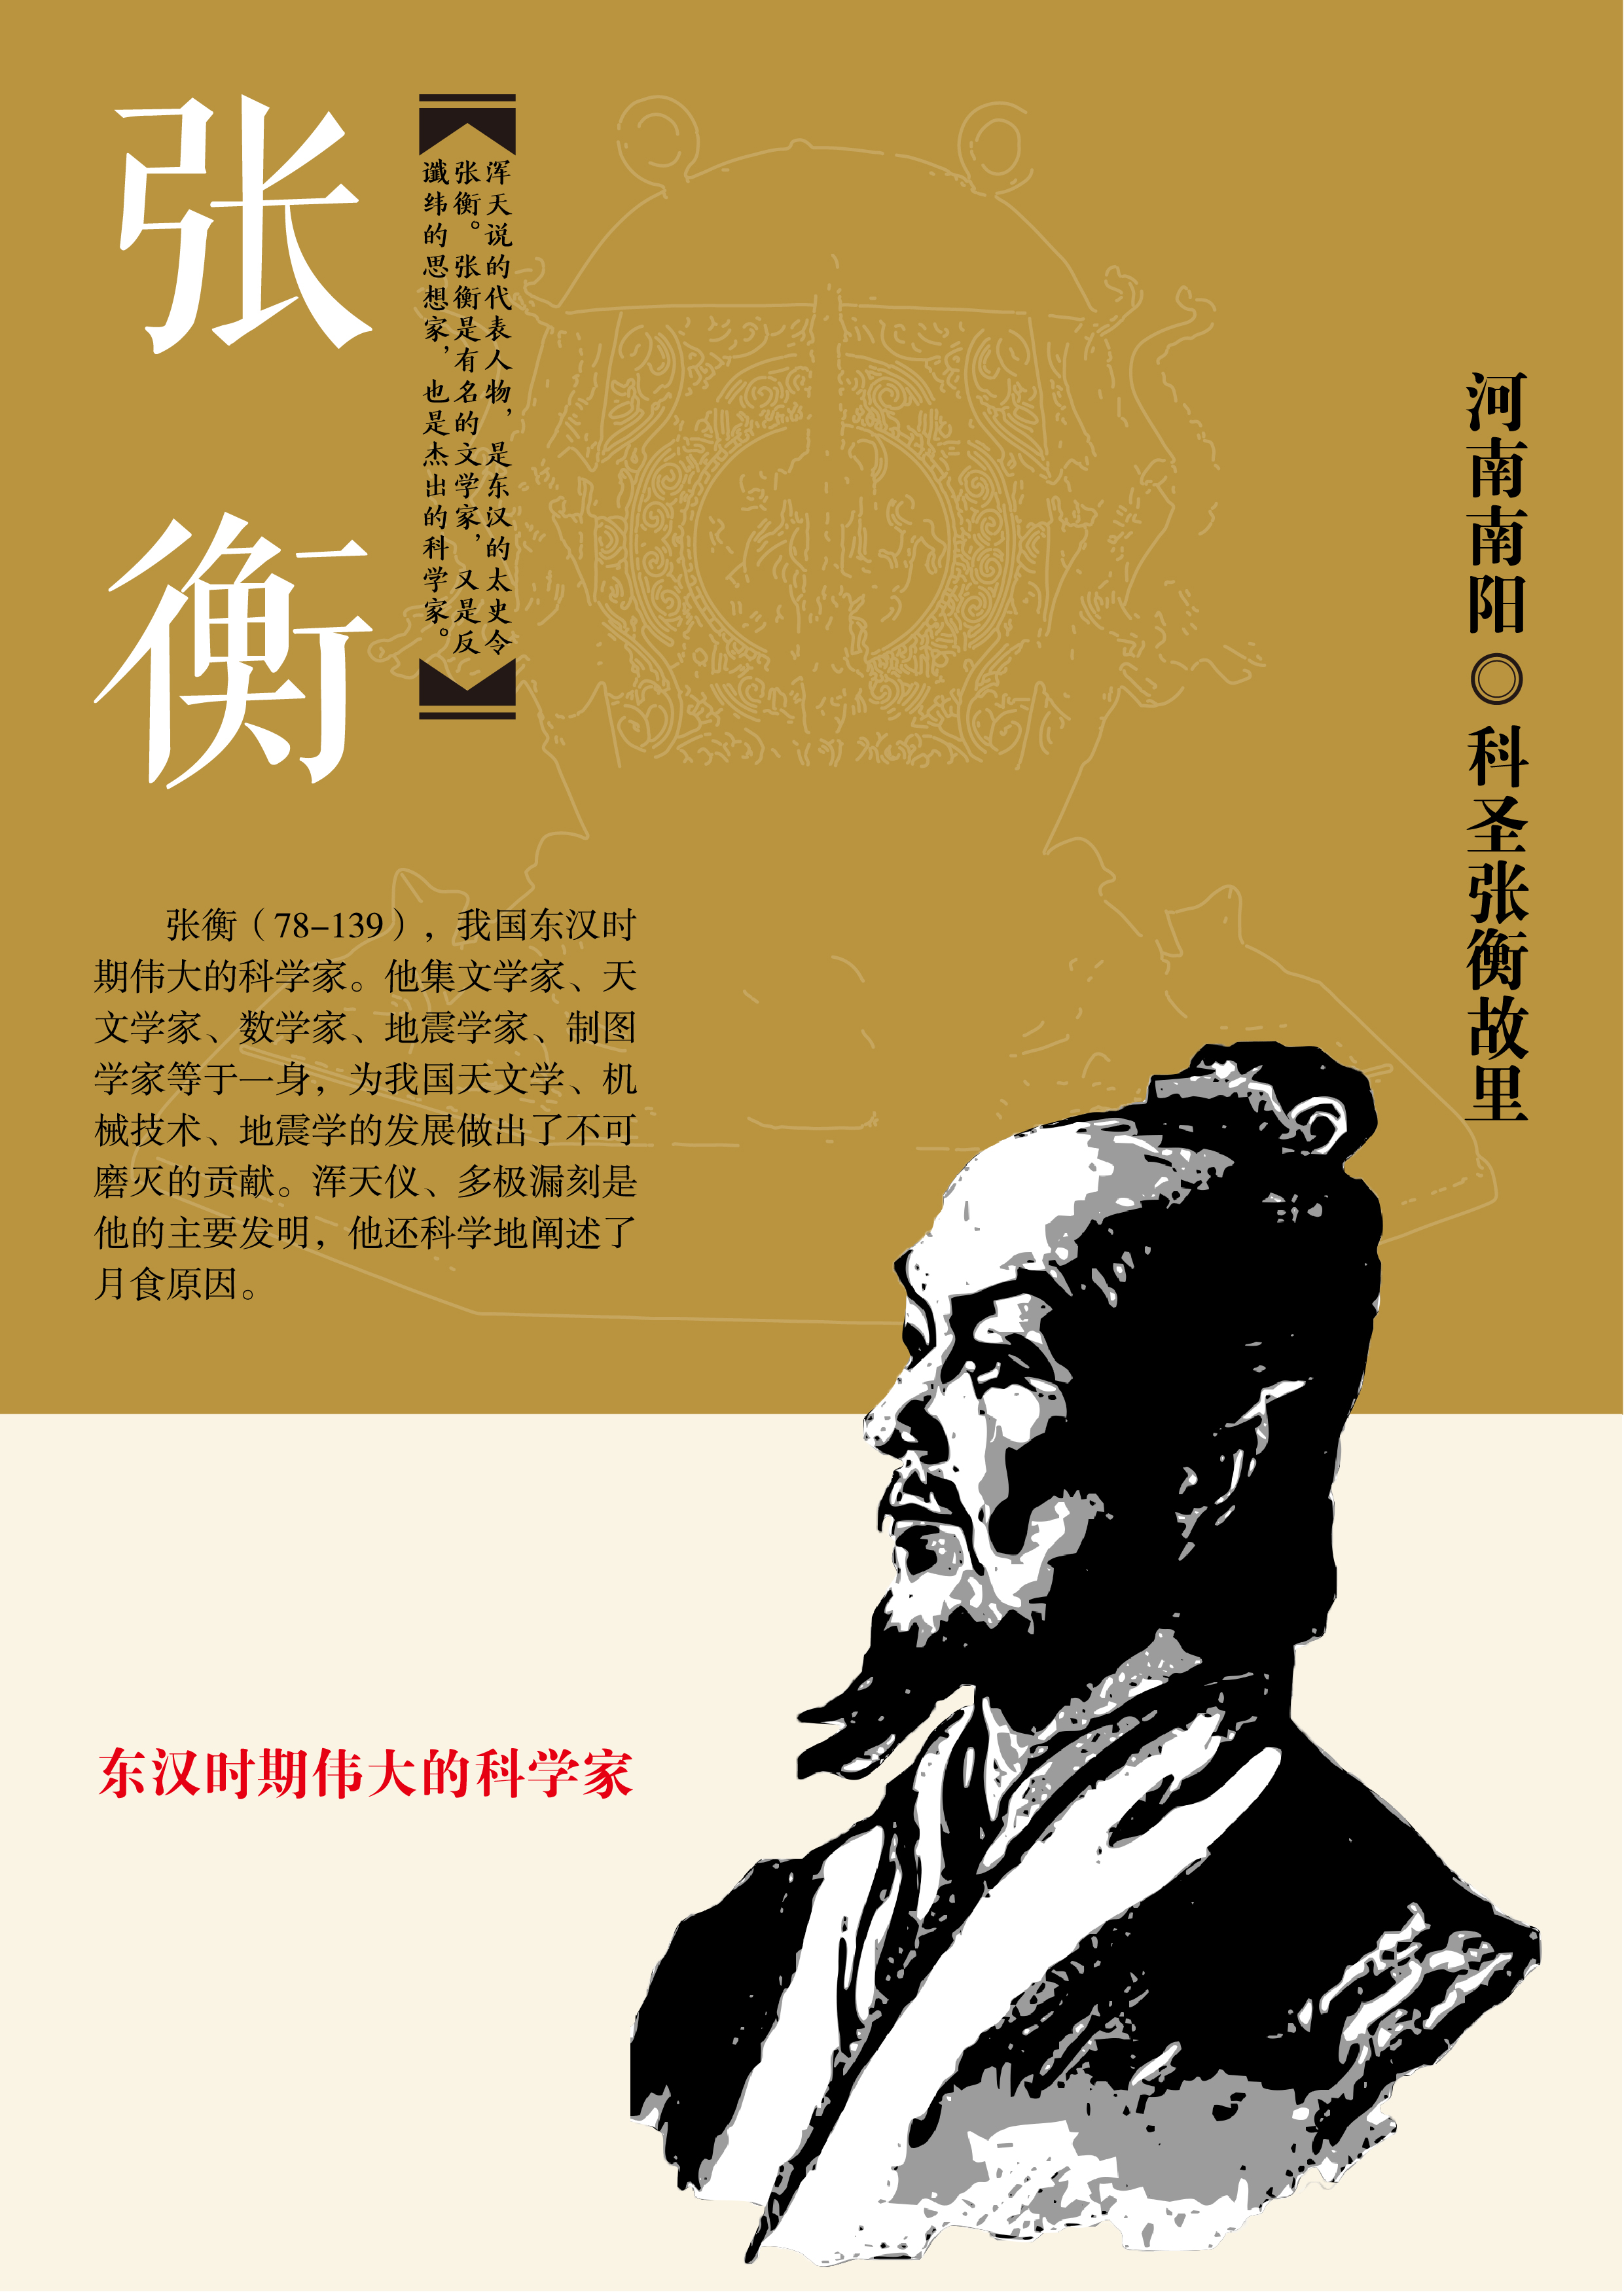 我怀着无比崇敬的心情,为东汉时期伟大科学家张衡编排设计海报